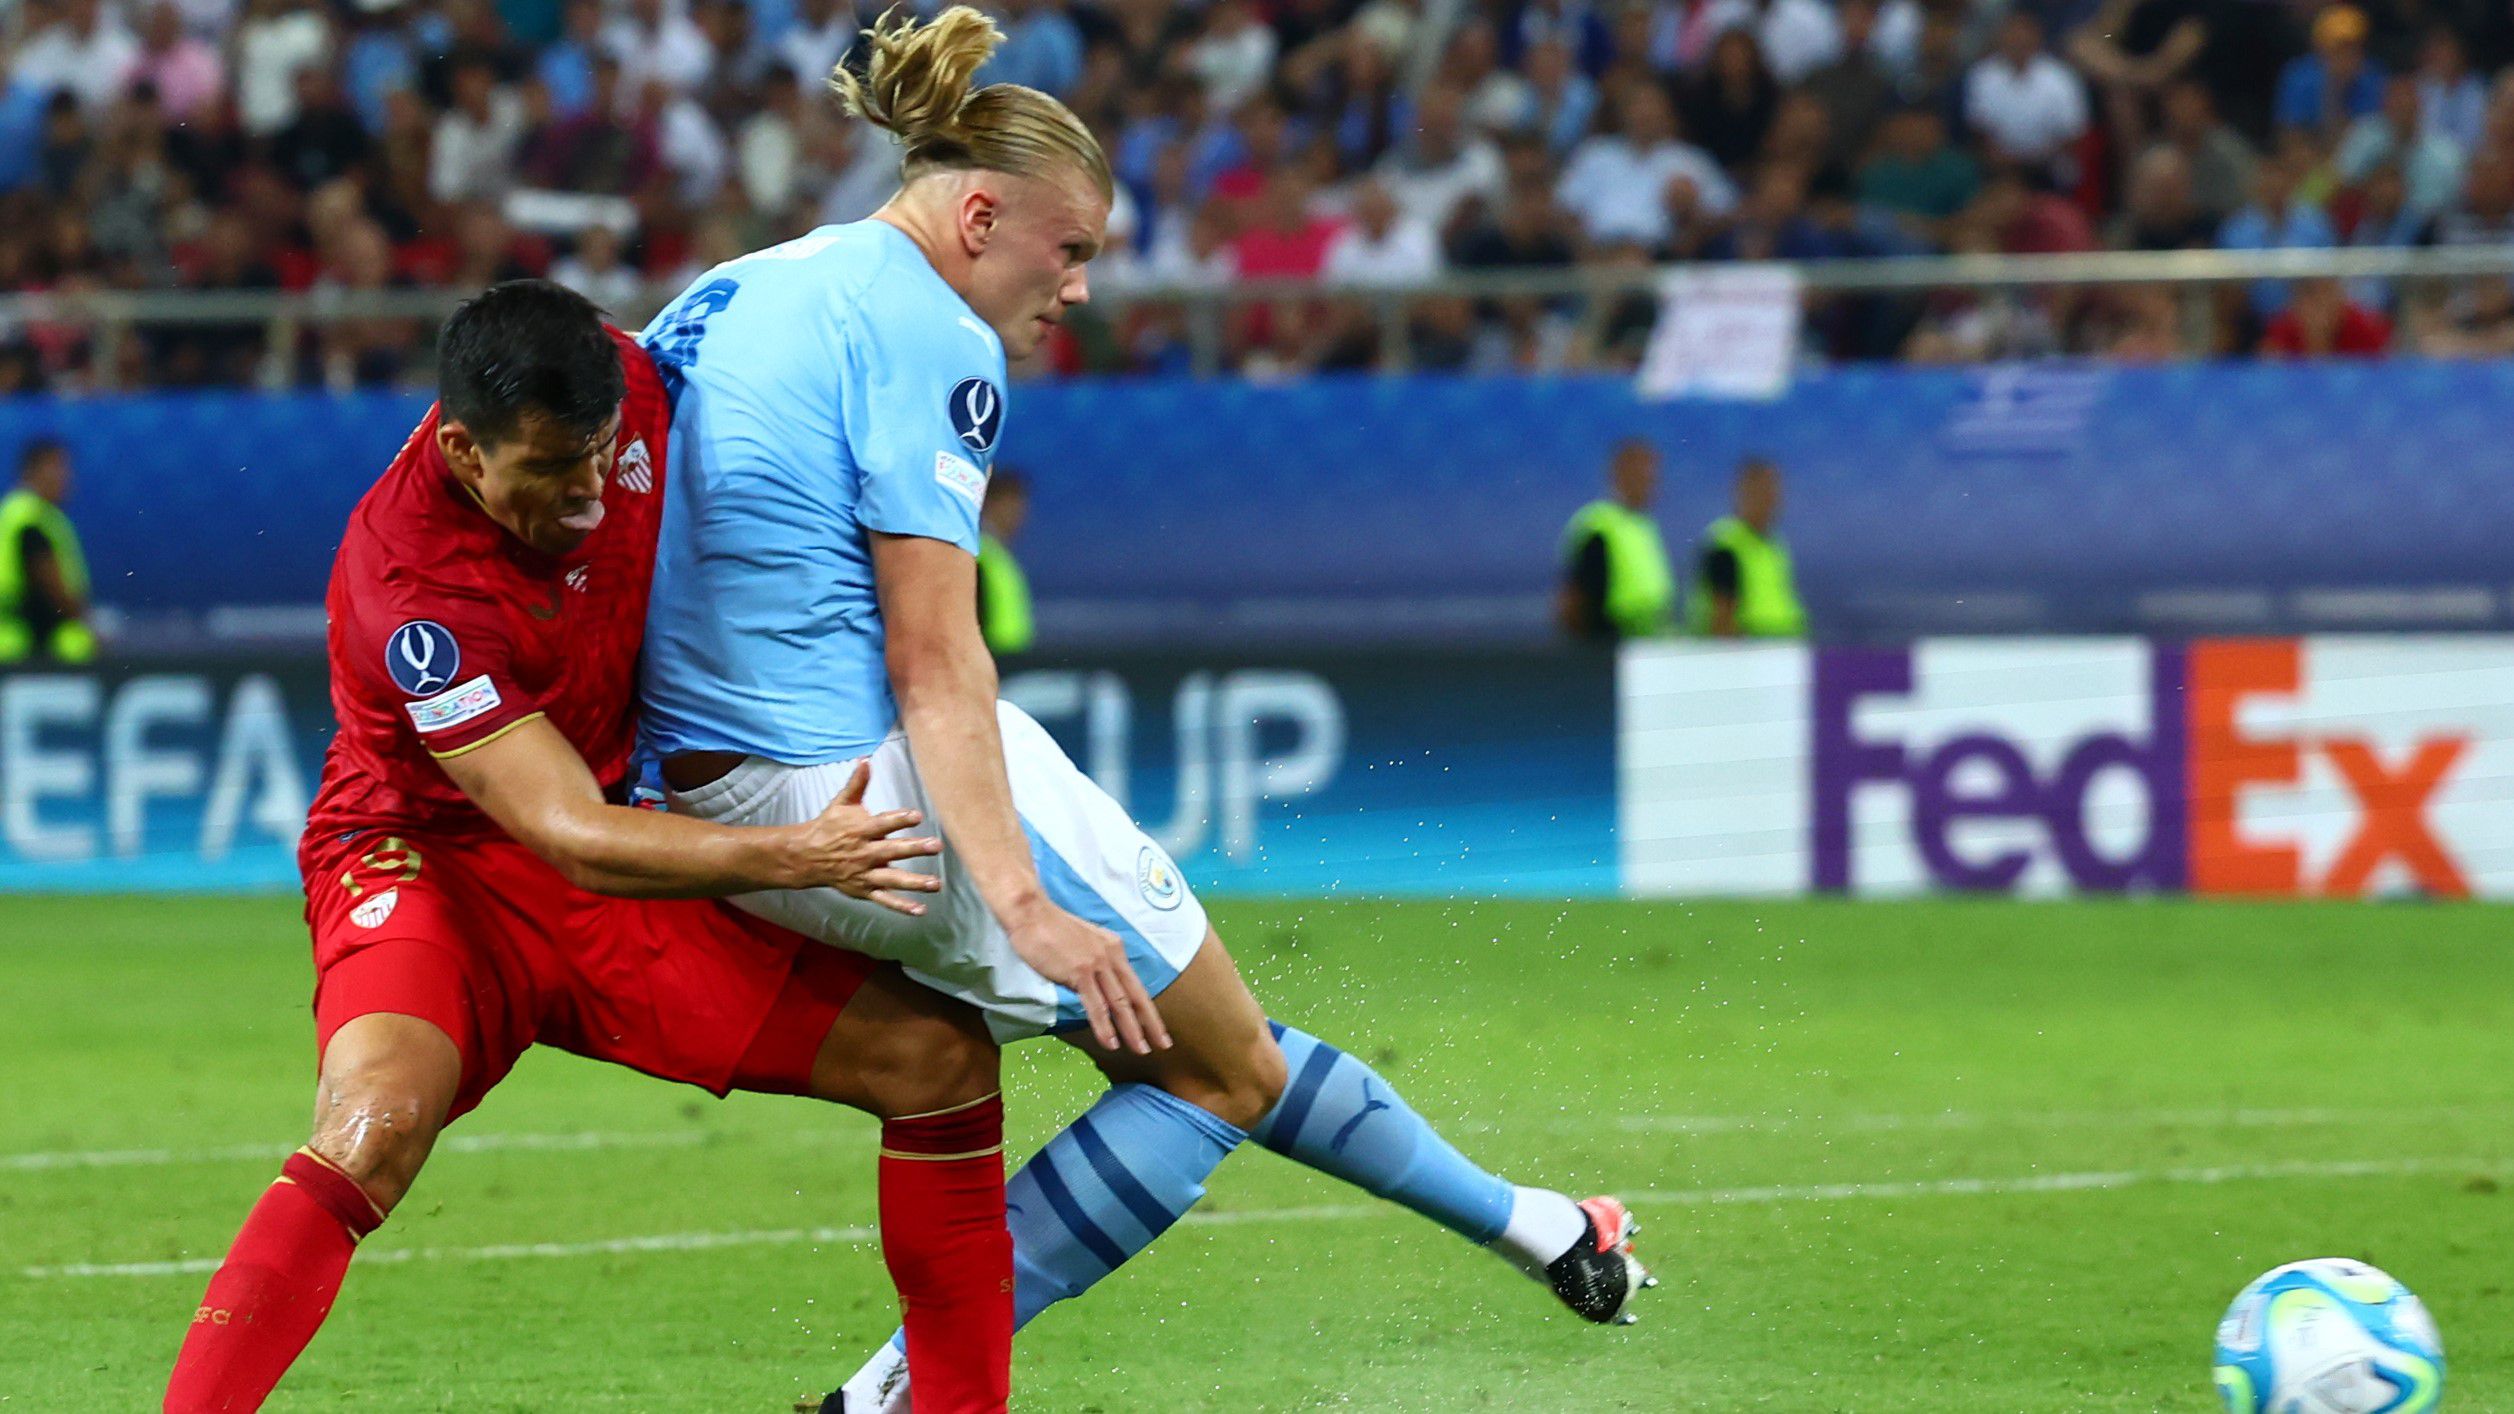 A Manchester City norvég gólvágóját, Erling Haalandot jól semlegesítette a Sevilla védelme, a tizenegyespárbajban viszont nem hibázott a csatár – végül a BL-győztes vitte haza a Szuperkupát